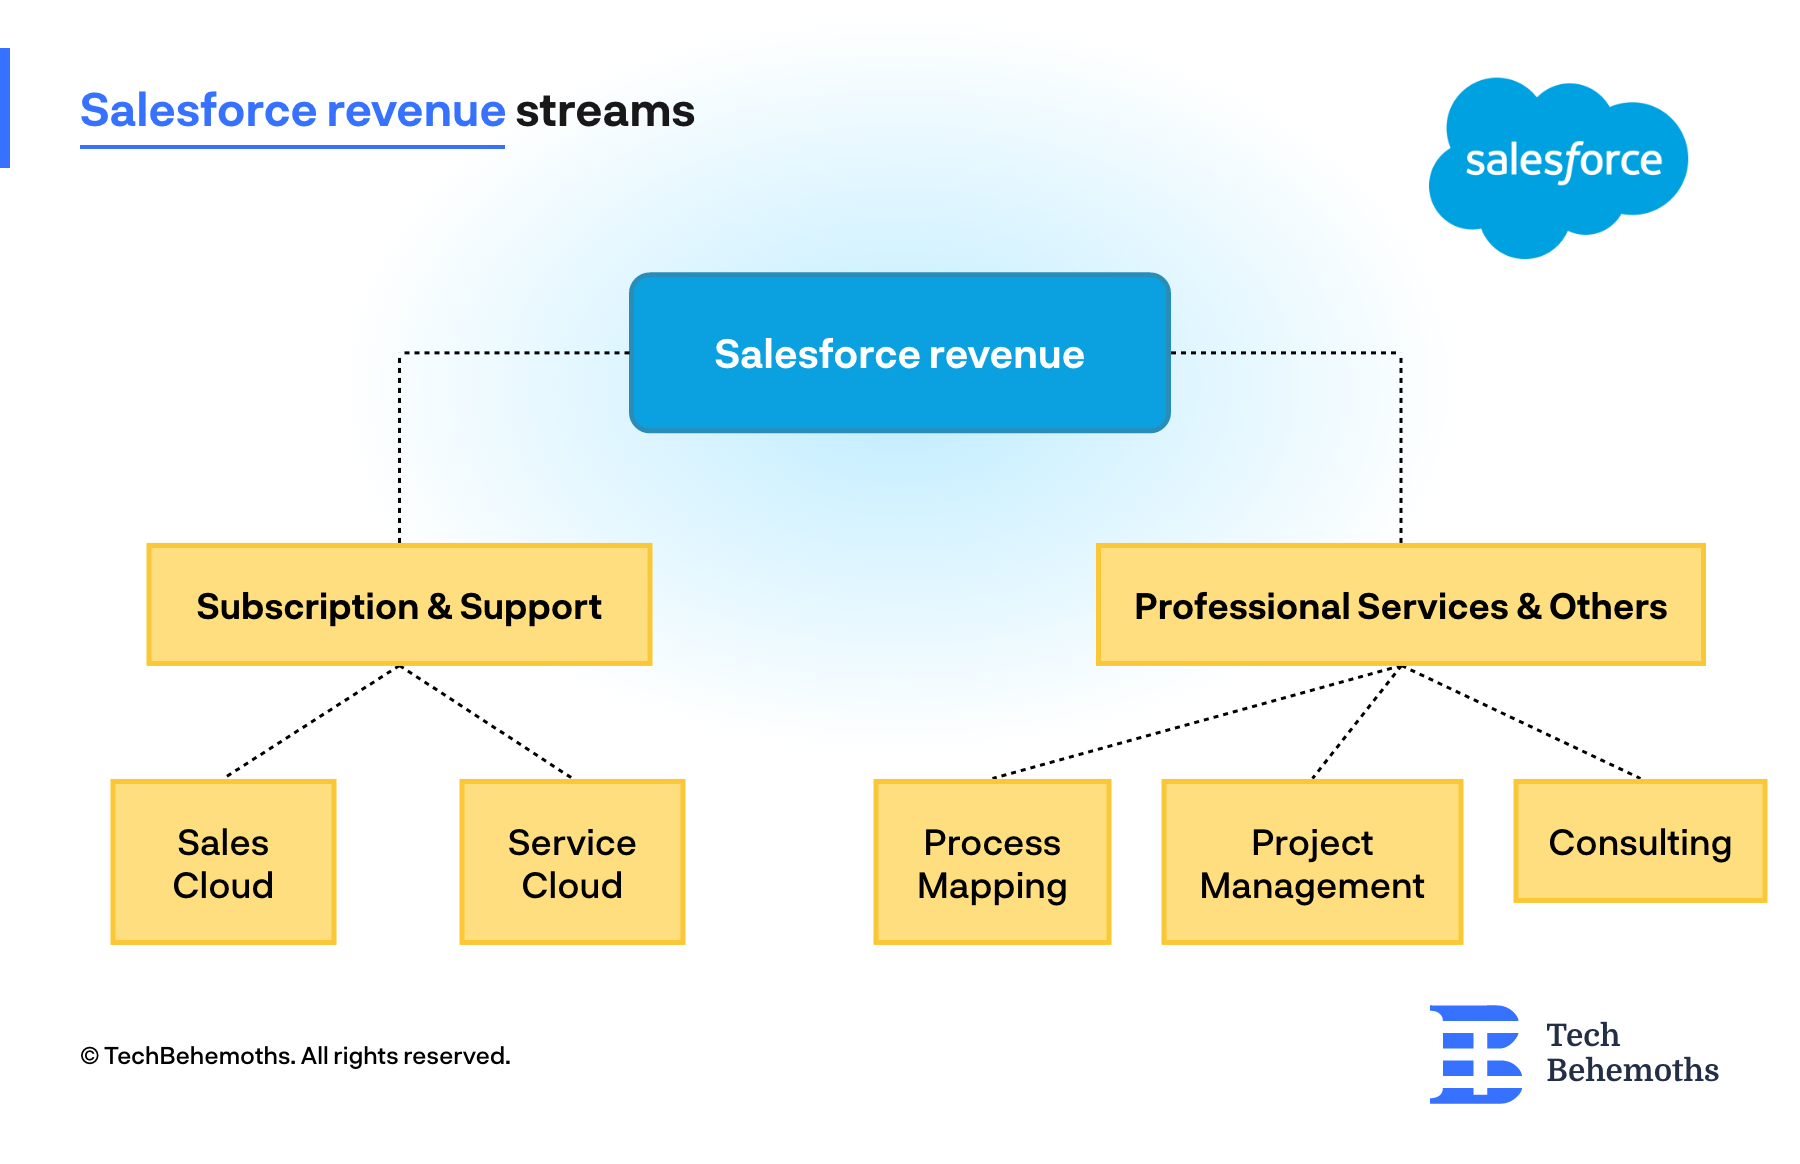 Salesforce revenue streams